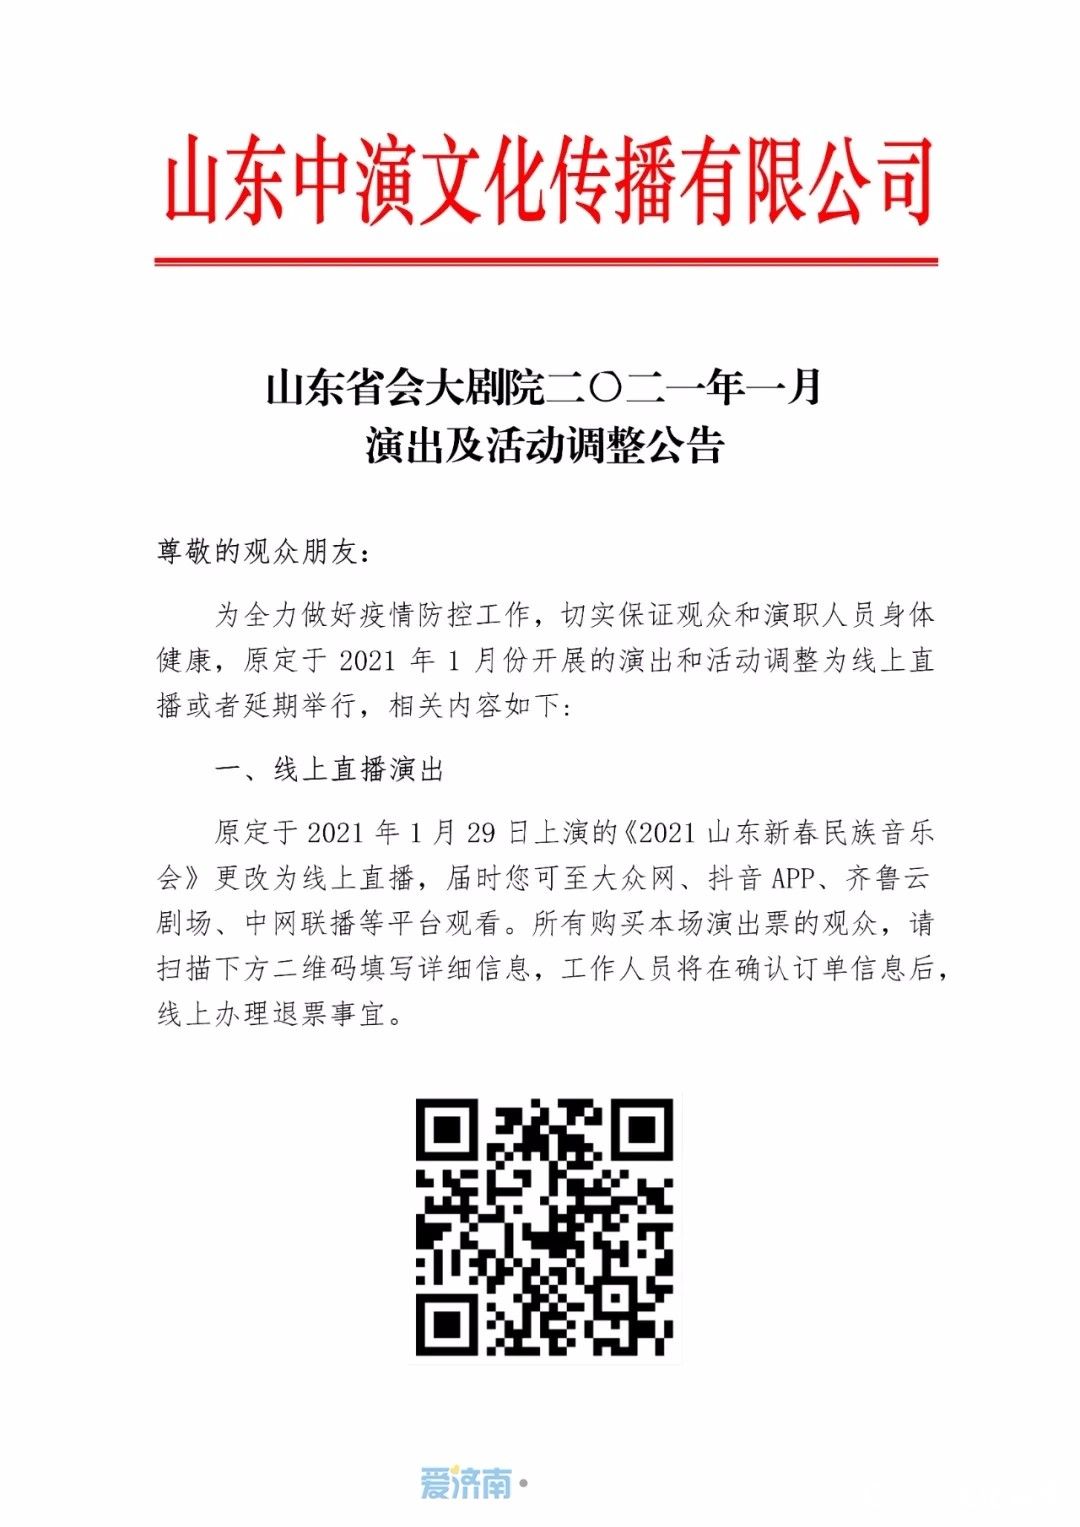 山东省会大剧院发布调整公告，1月部分演出活动推迟或取消